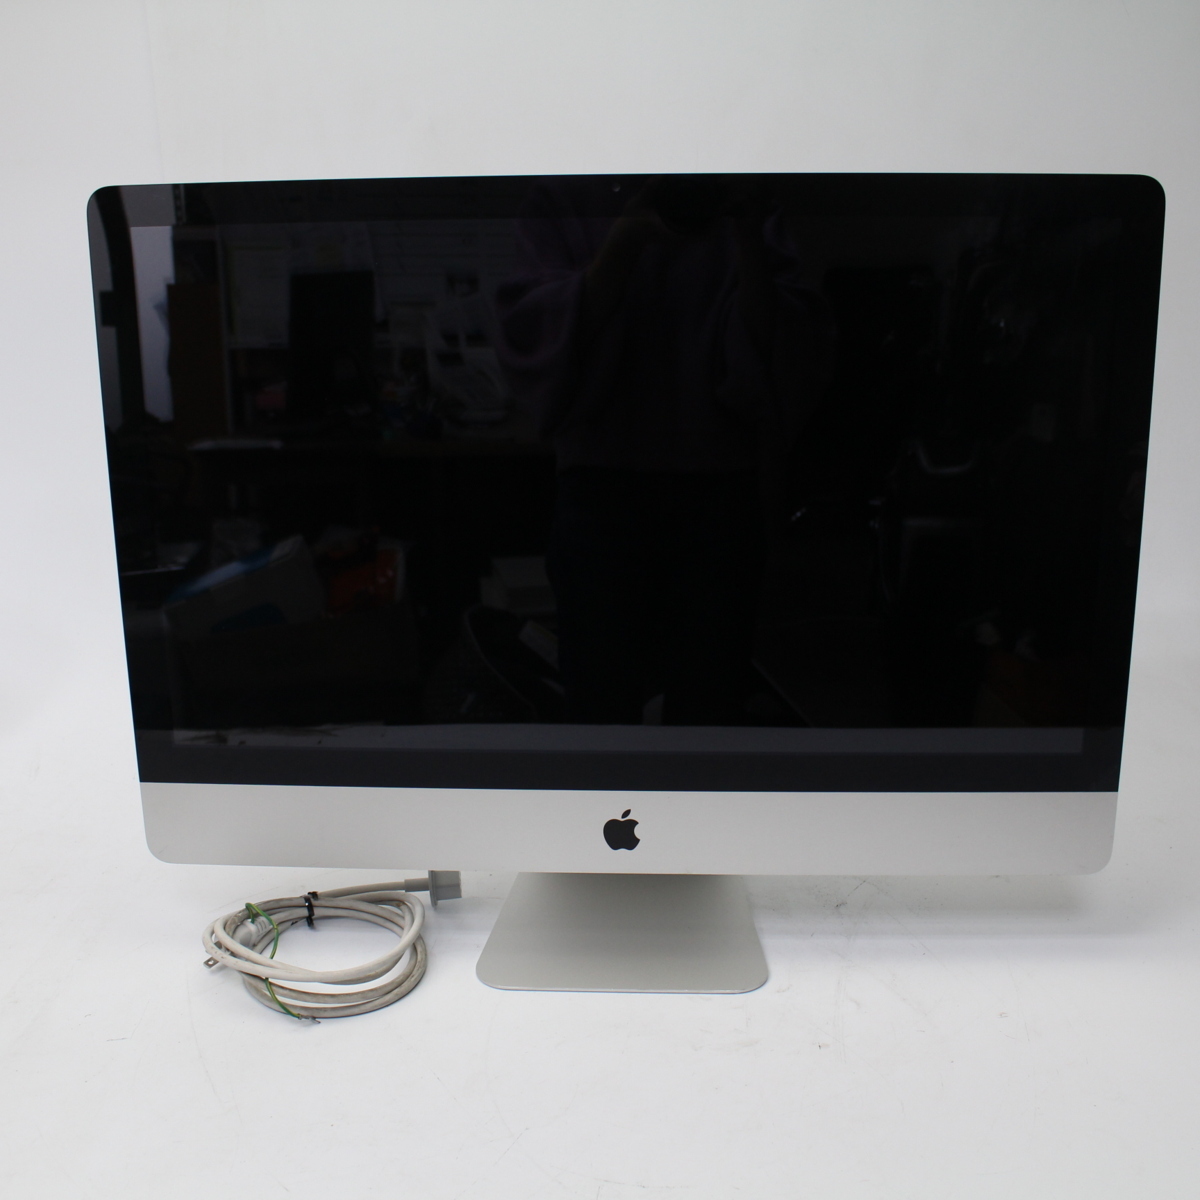 アップル iMac A1312 27-inch, Mid 2010 8GB アイマック デスクトップPC 2010年 本体のみ